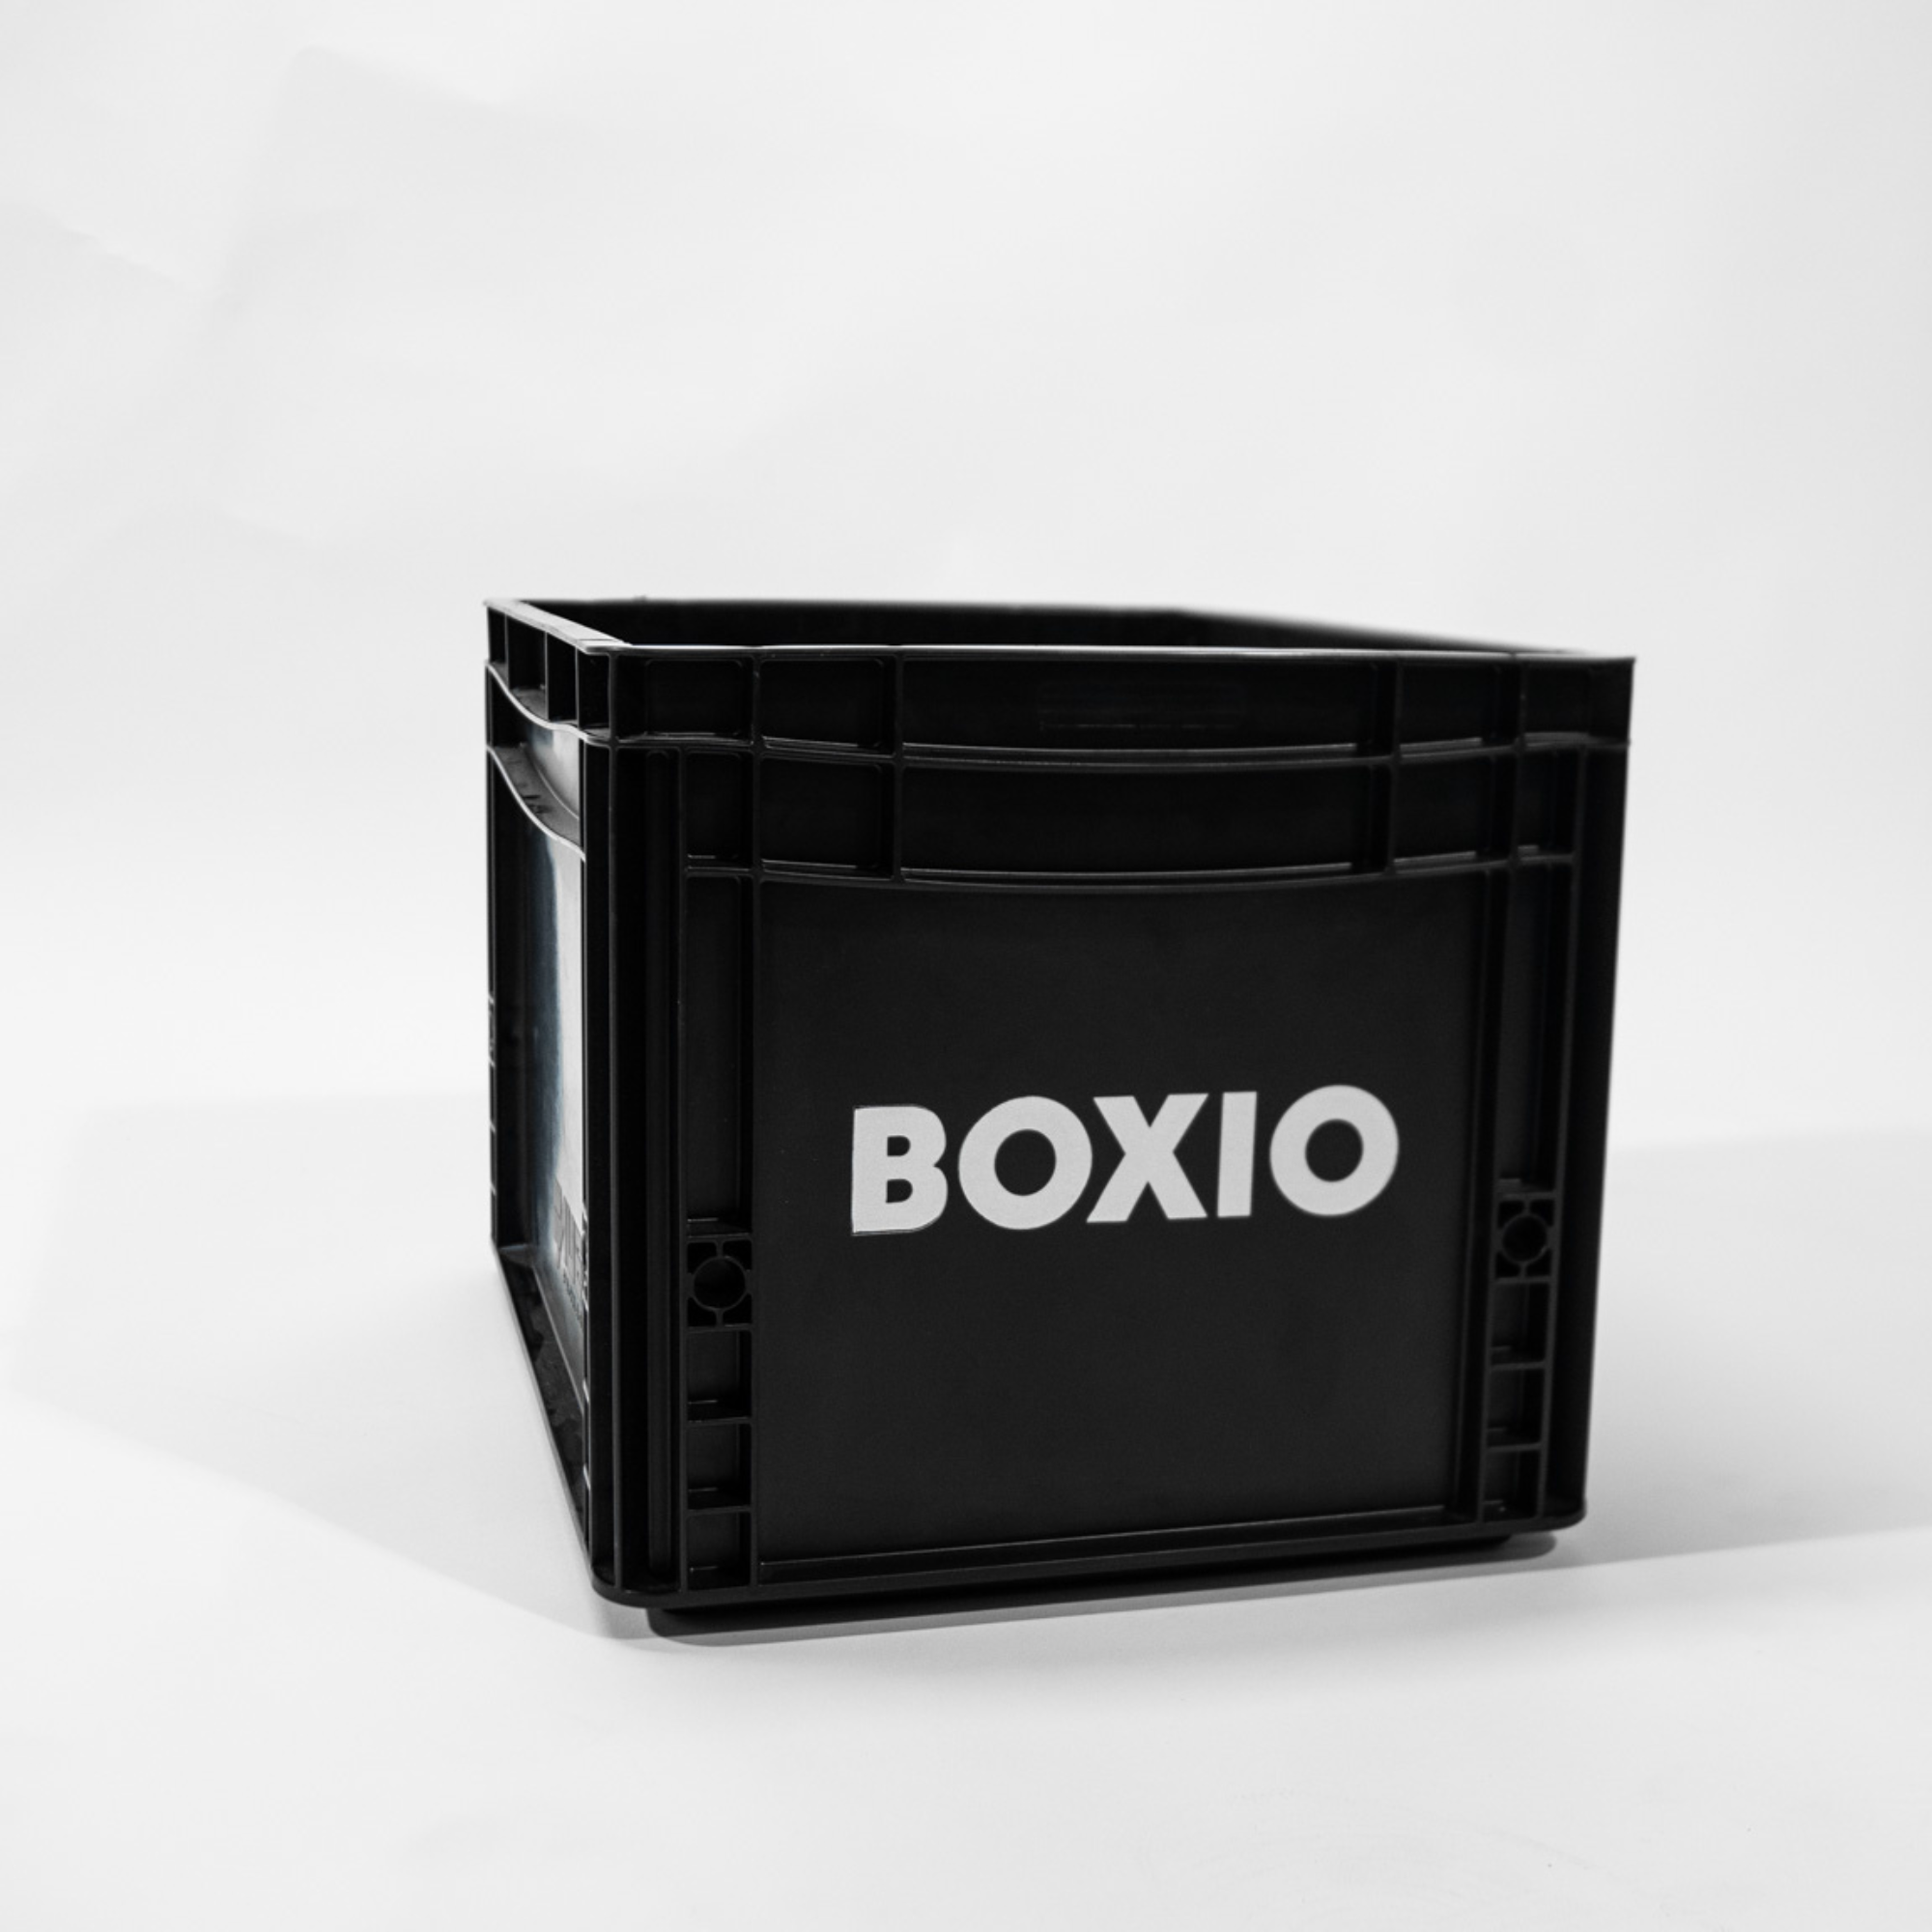 Eurobox "BOXIO" con taladros para BOXIO - INODORO